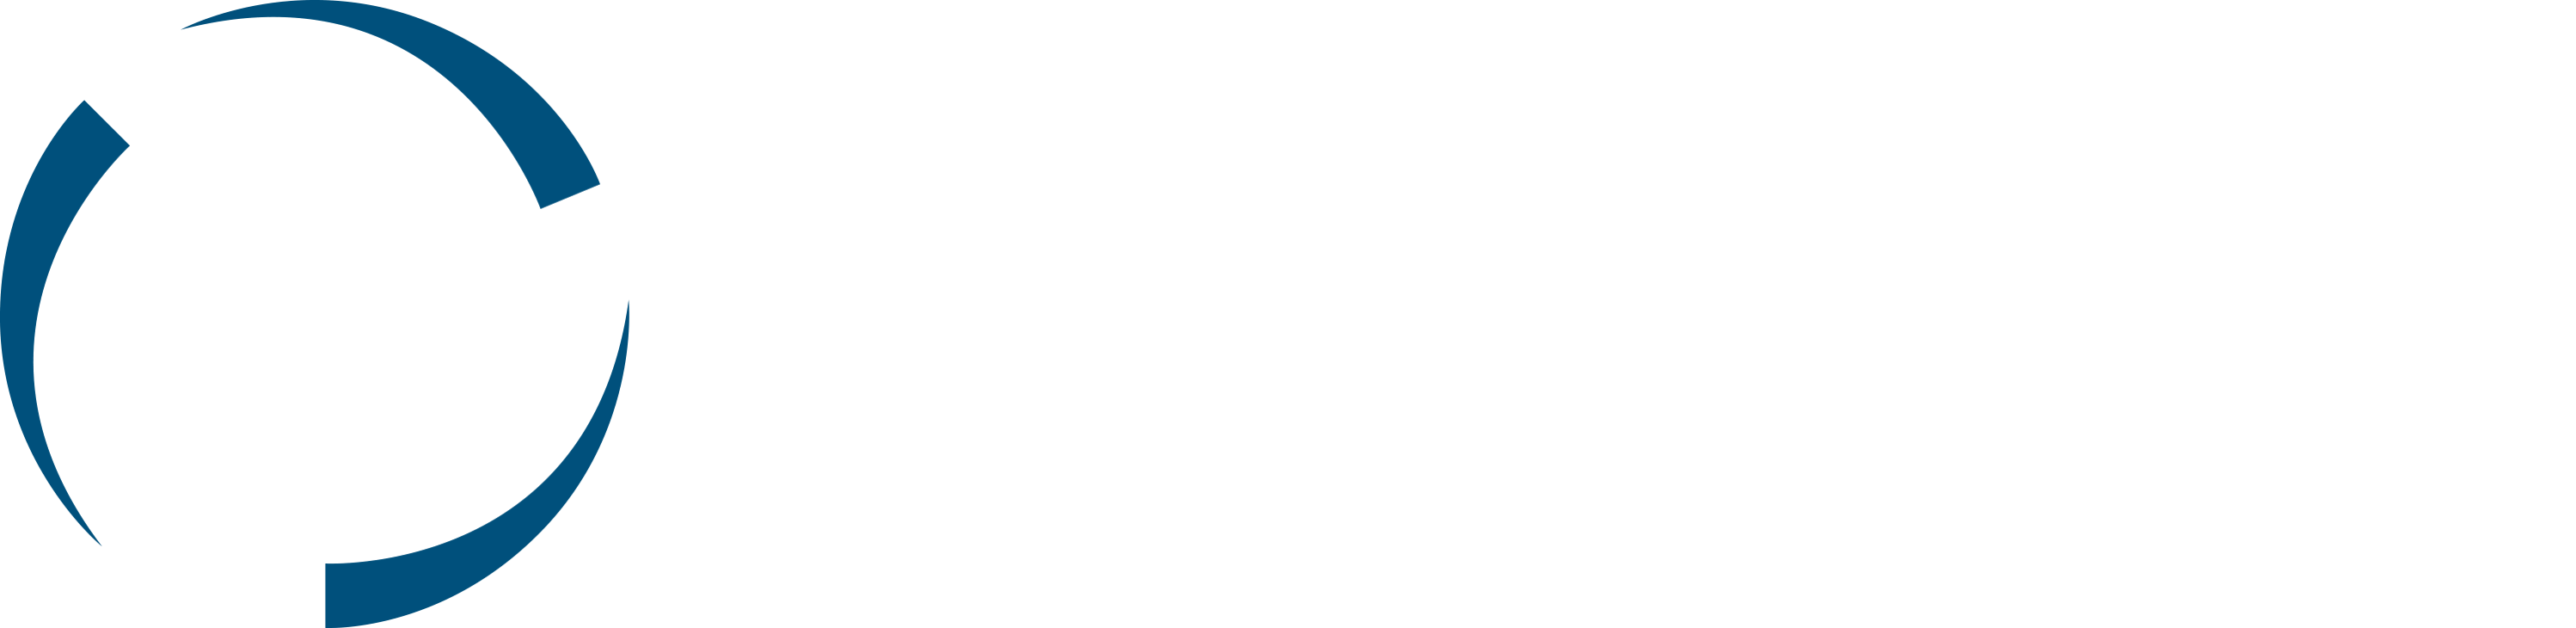 rotachrom_logo_green_back